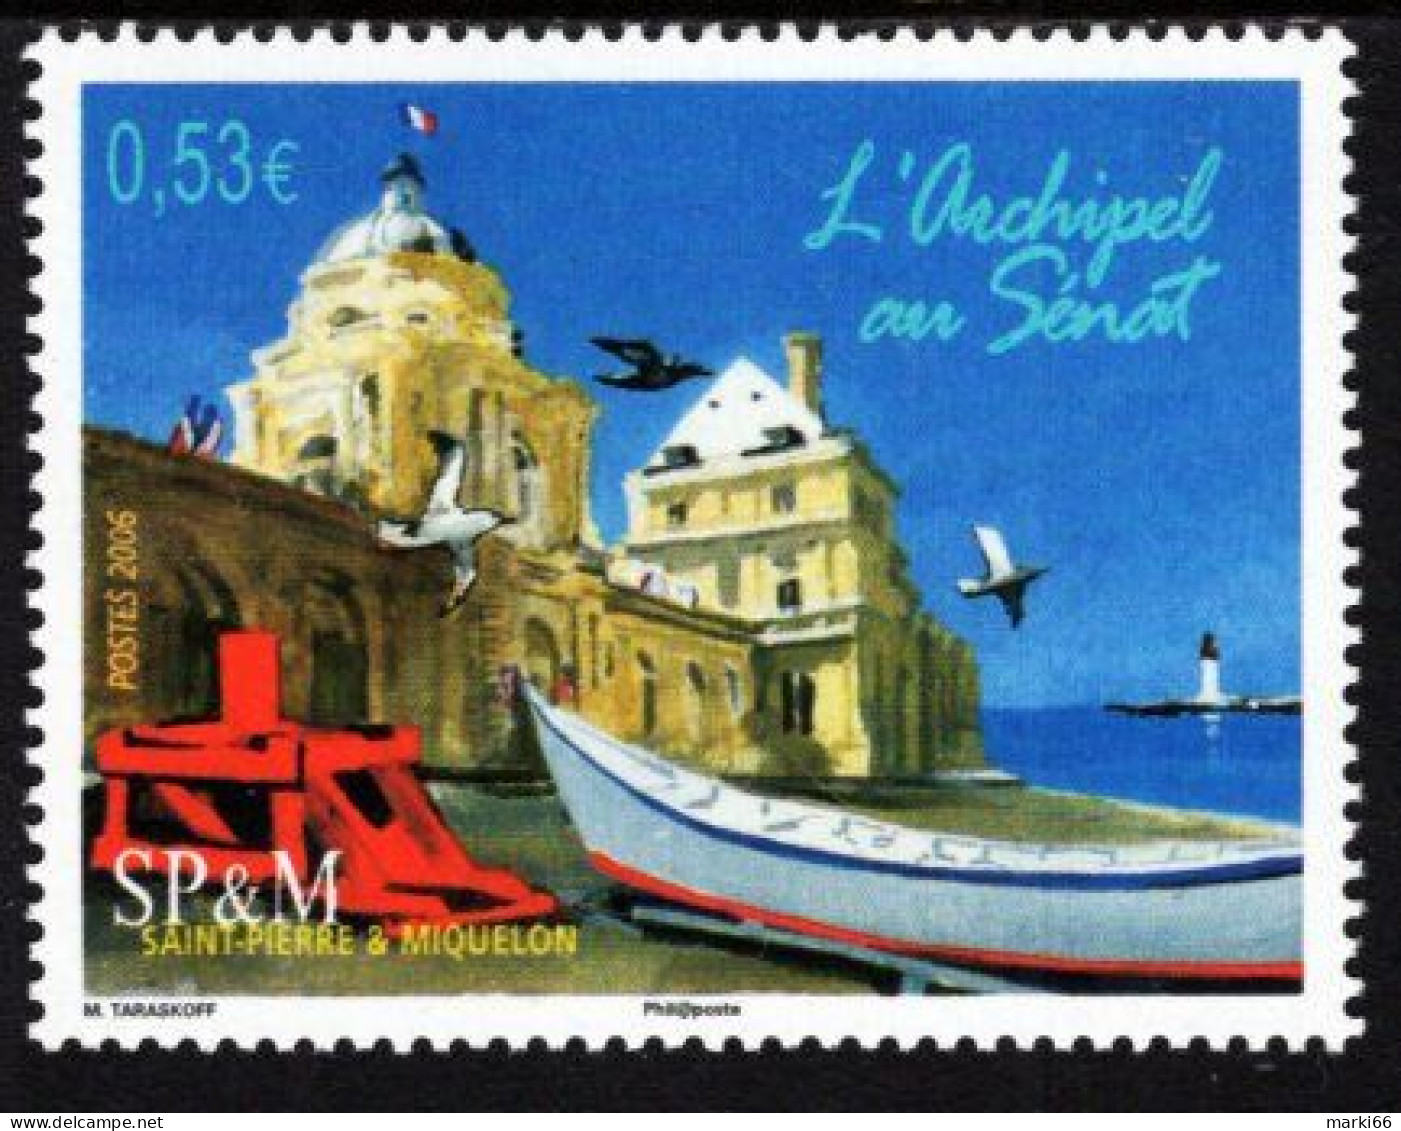 St. Pierre & Miquelon - 2006 - SPM Senate And Philately - Stamp Salon In Paris - Mint Stamp - Ungebraucht